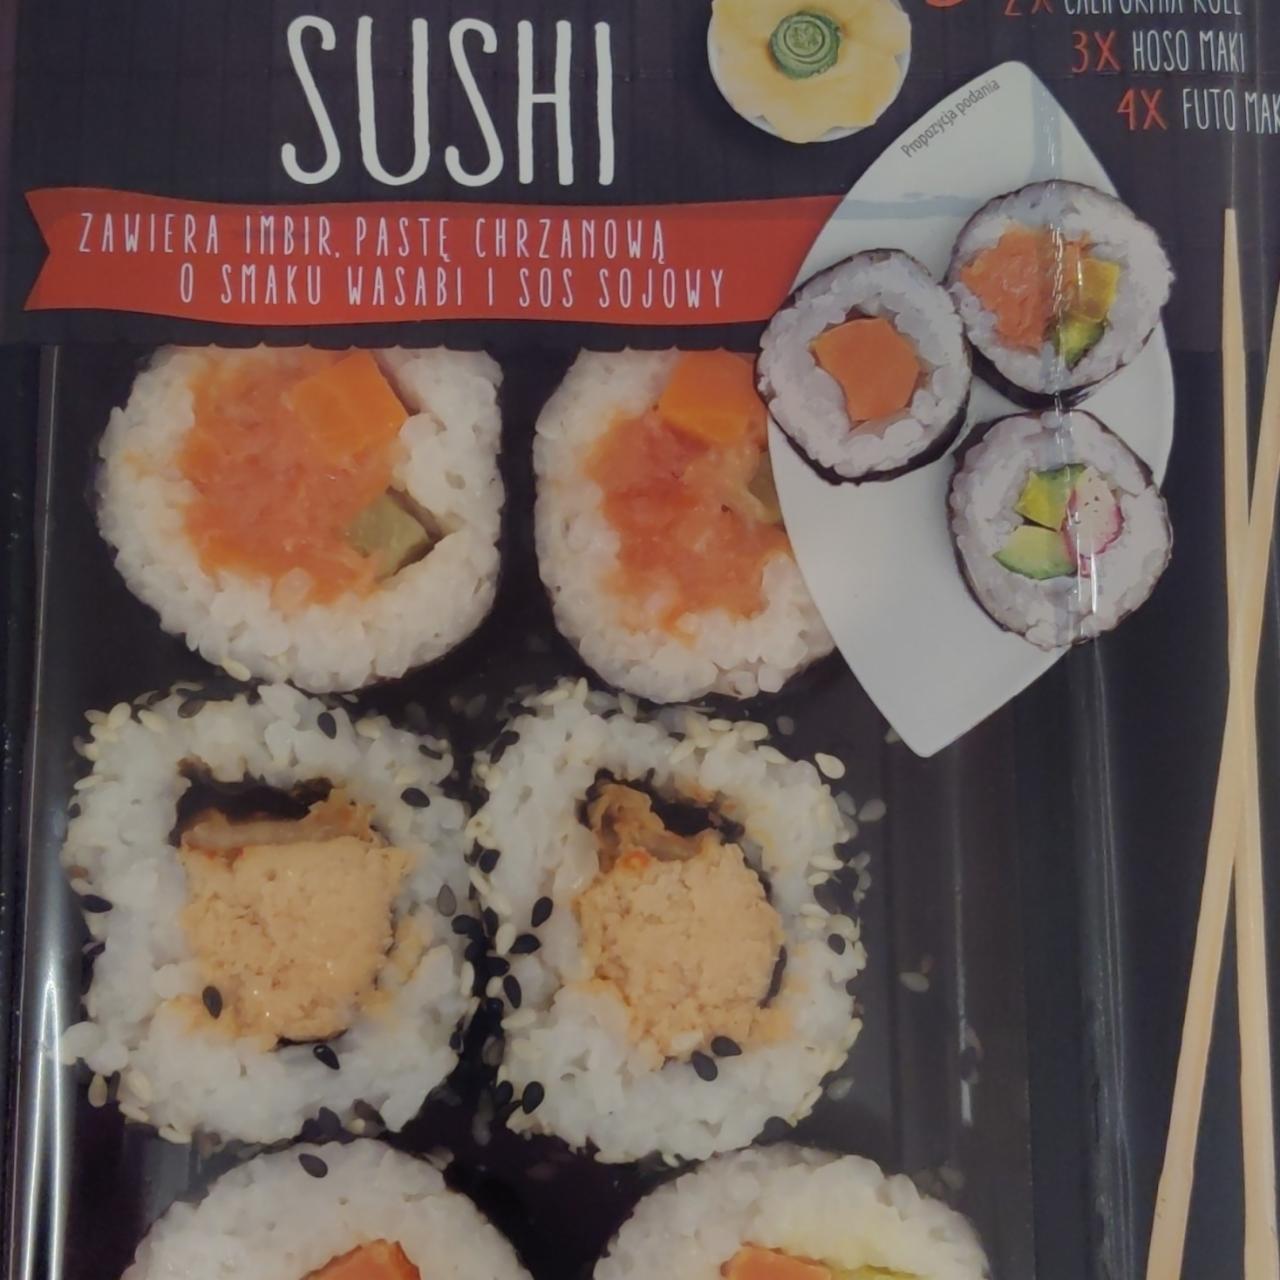 Zdjęcia - Fish & Go Sushi imbir, pasta chrzanowa, wasabi i sos sojowy Marinero